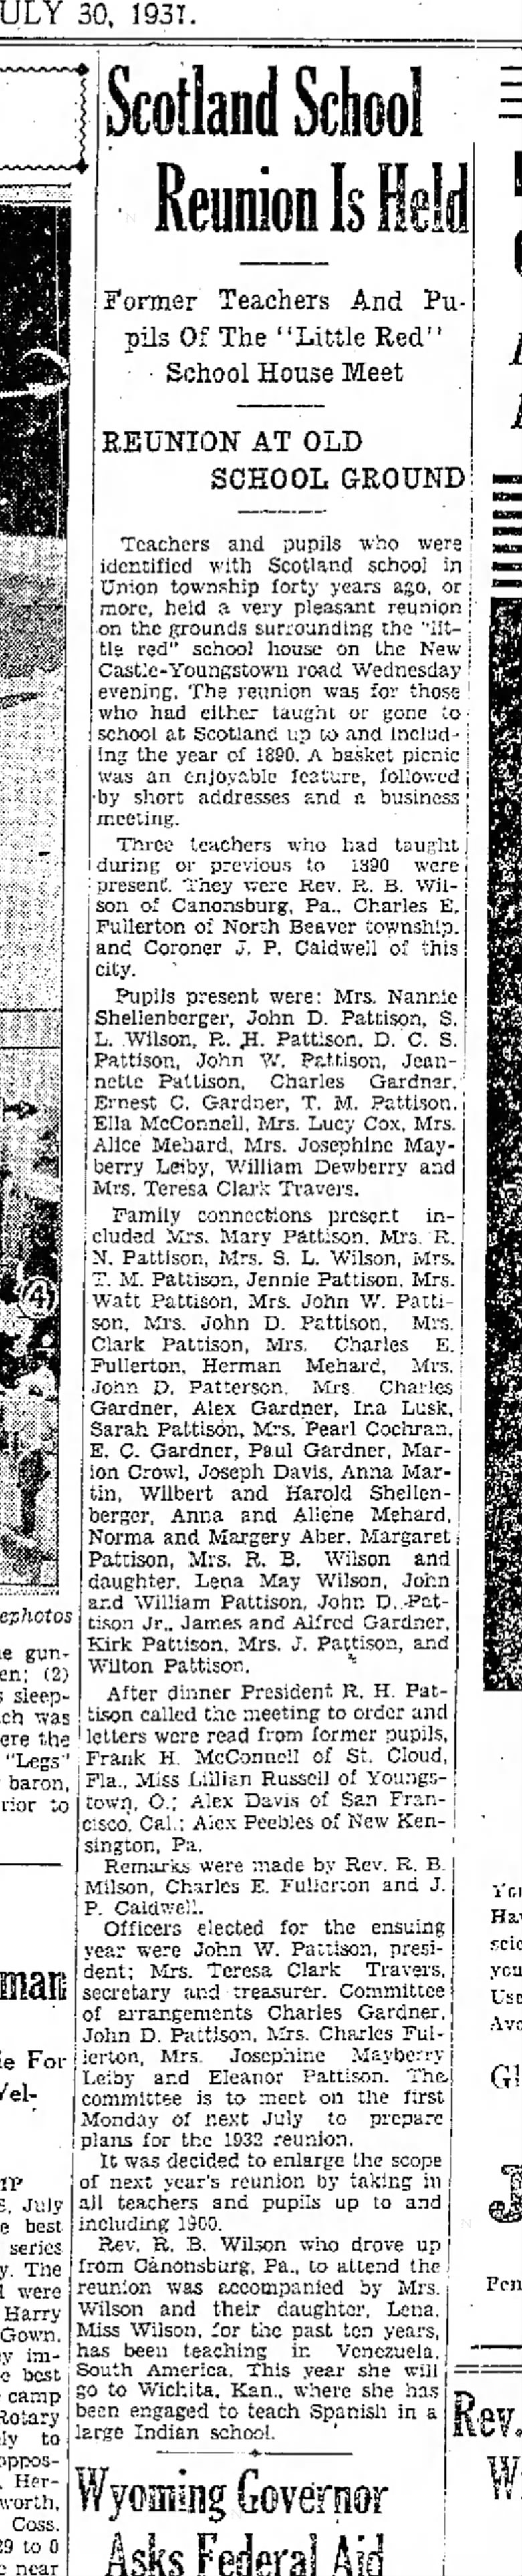 New Castle News (New Castle, PA), Thursday, 30 July 1931 p9 c6